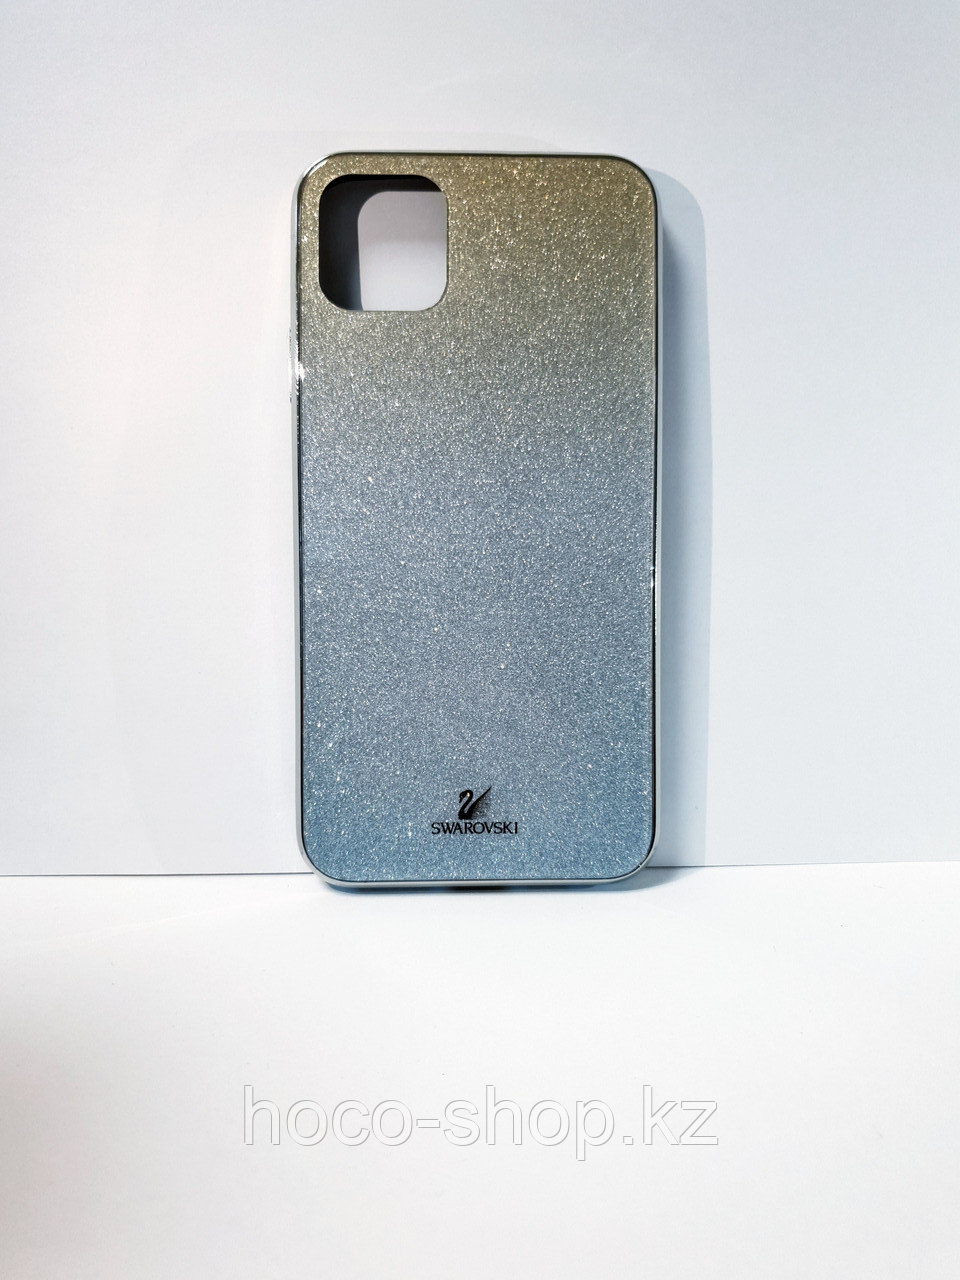 Защитный чехол для iPhone 11 Pro Max, пластик со стеклом